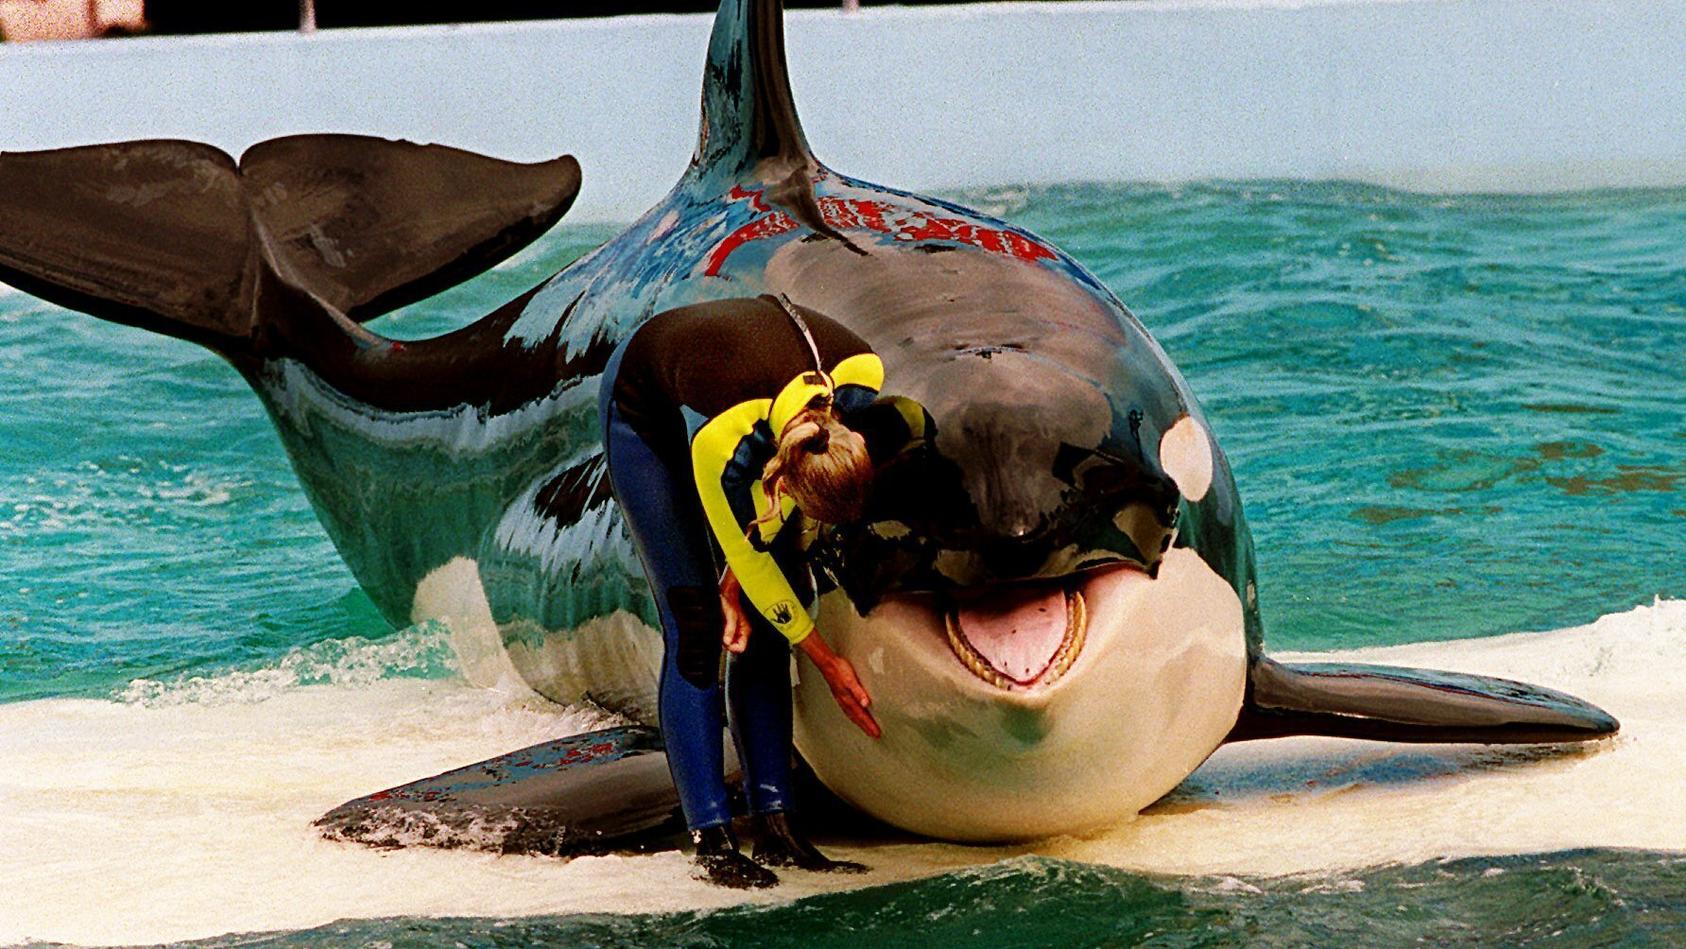 Nach 50 Jahren Gefangenschaft - Orca Lolita könnte ausgewildert werden